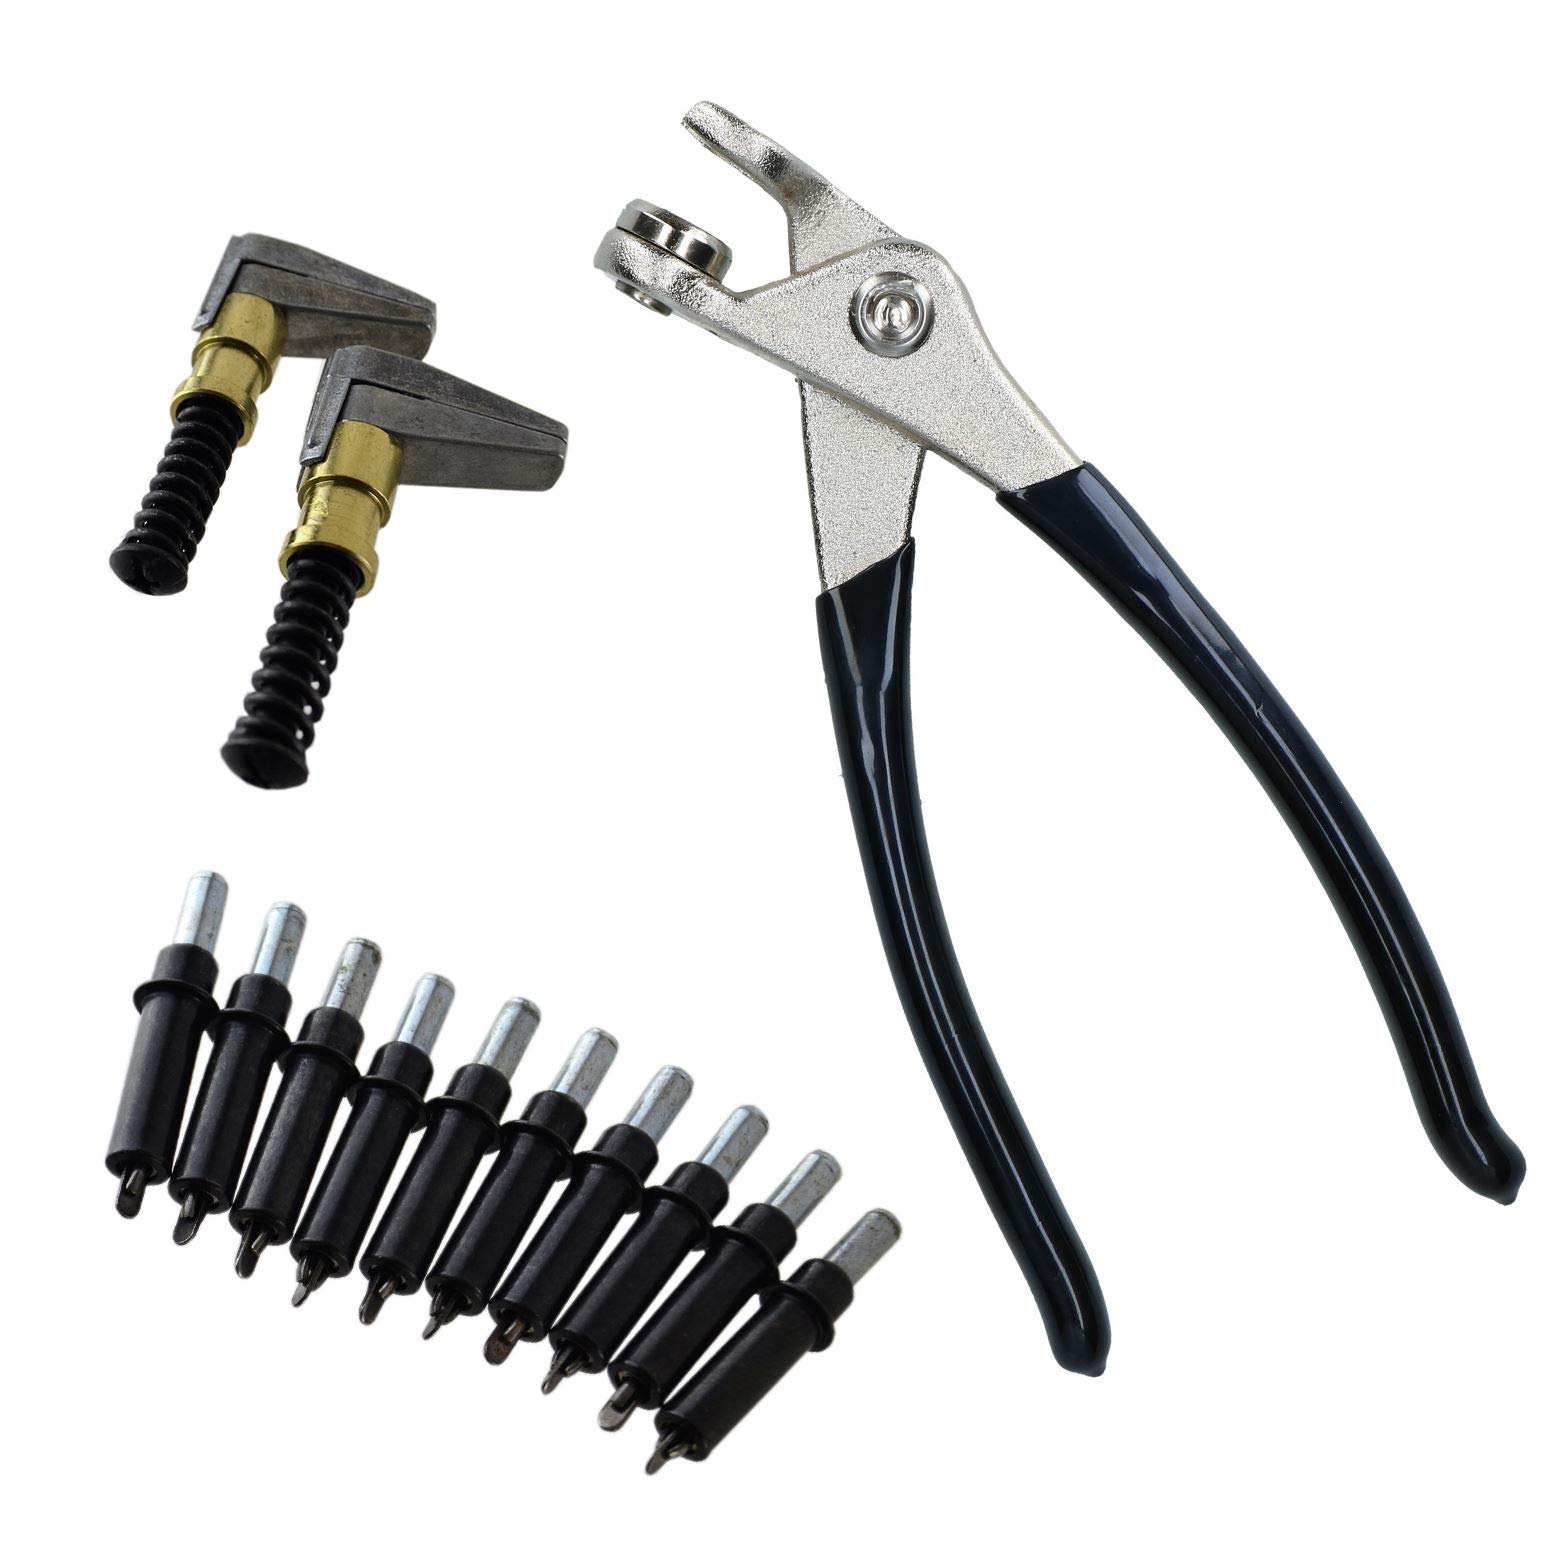 AB Tools Cleco Temporary Fasteners 5/32" Nieten Pins (10) Zangen und 2 Metallkeilspanner von AB Tools